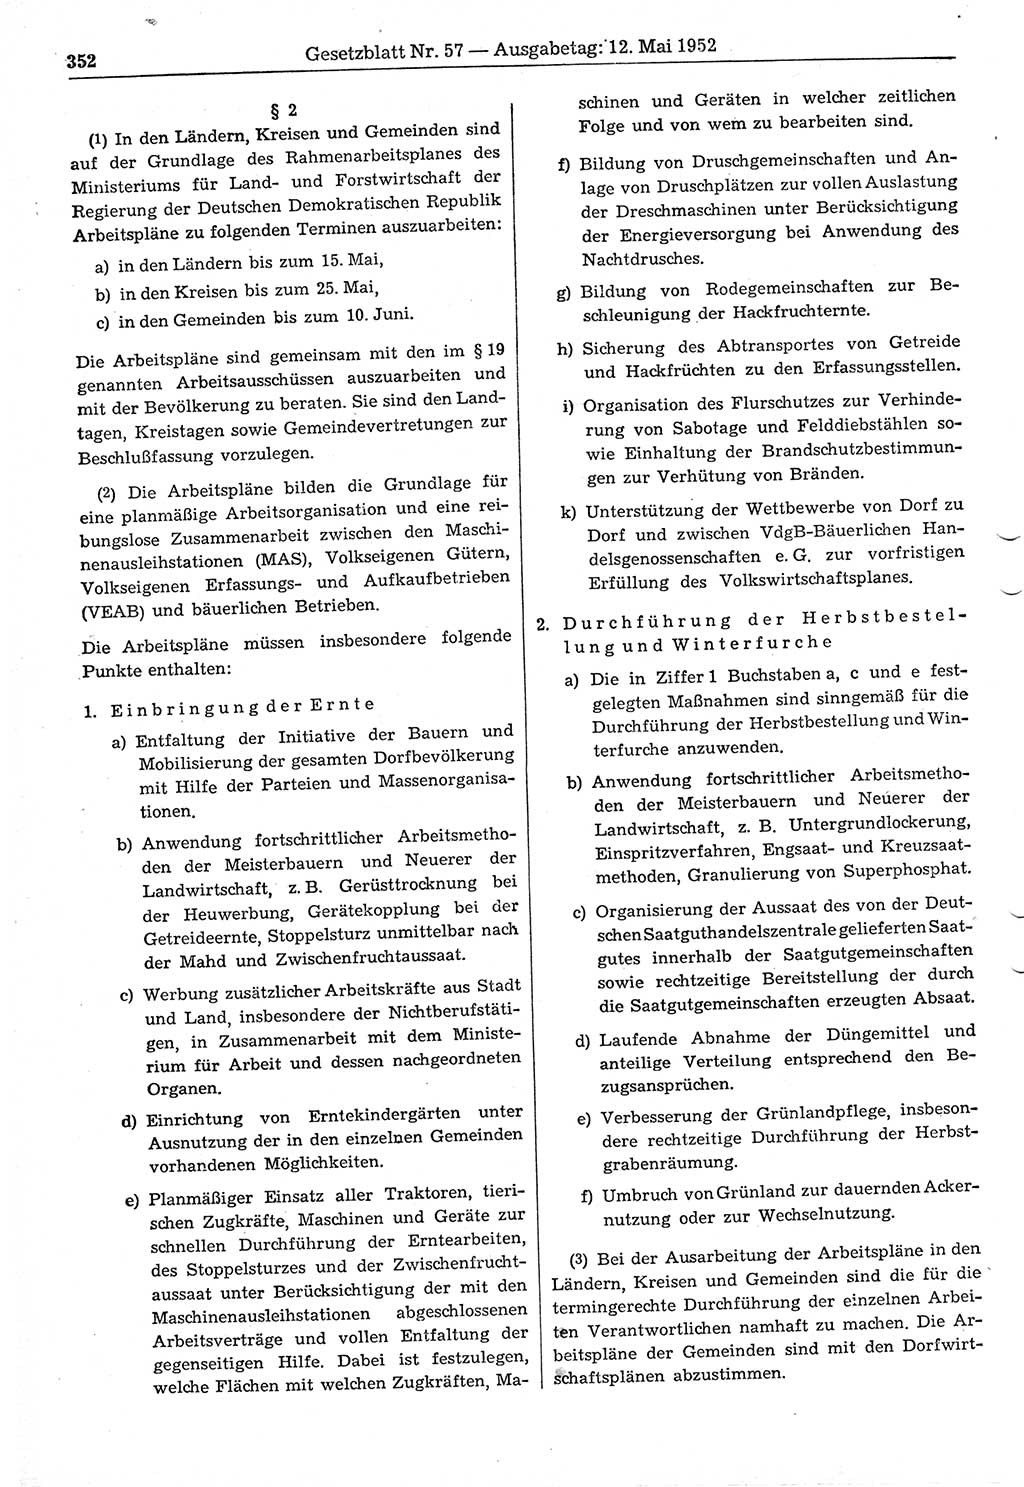 Gesetzblatt (GBl.) der Deutschen Demokratischen Republik (DDR) 1952, Seite 352 (GBl. DDR 1952, S. 352)